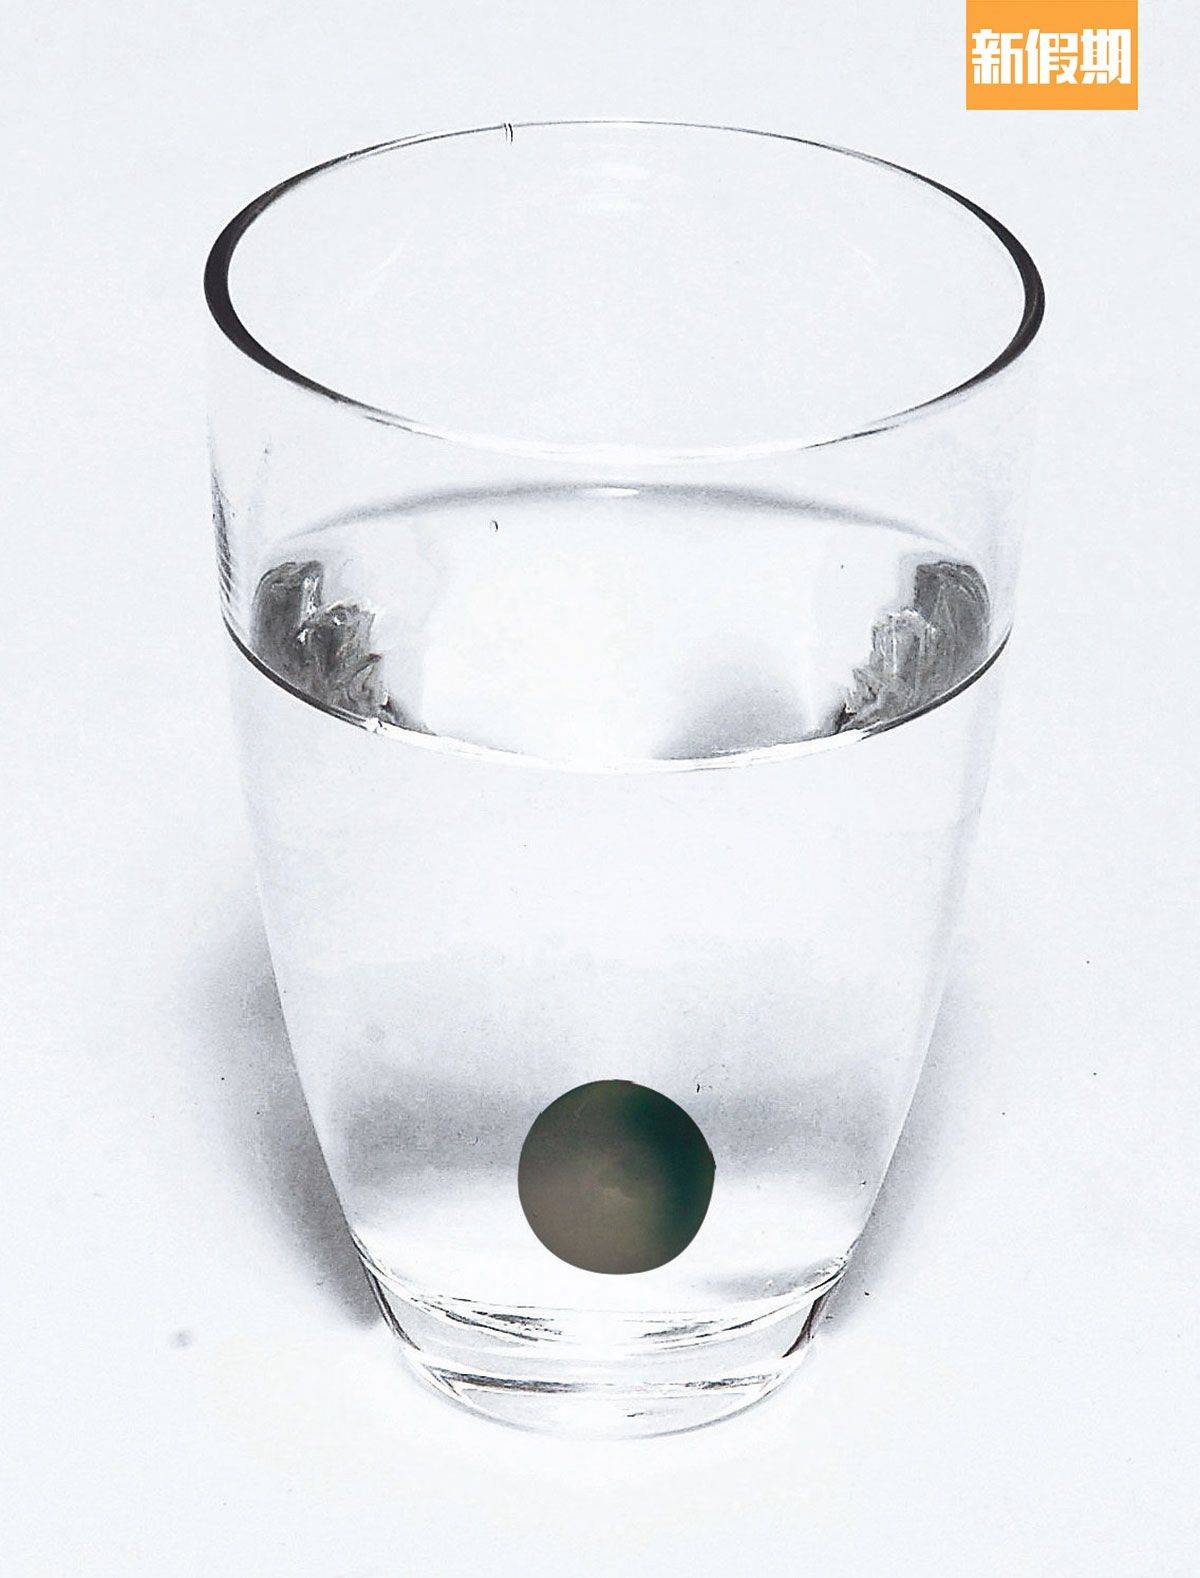 蘇民峰 可以正西、中宮、西北這3個方向放1杯水，在水杯裡加一粒黑石。